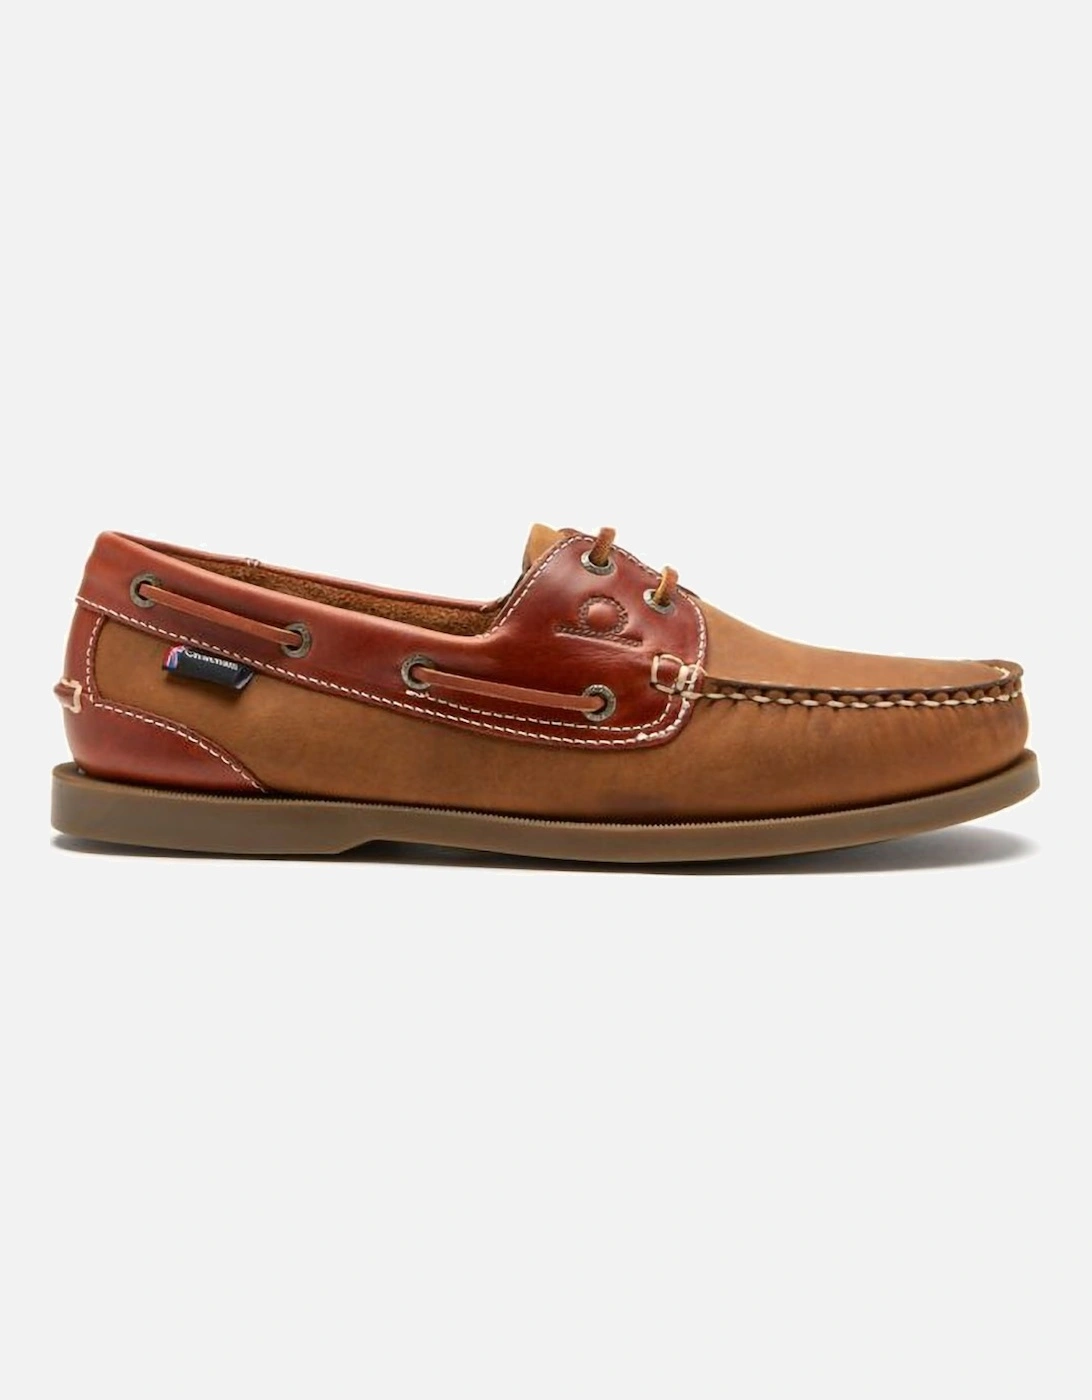 Bermuda Mens Boat Shoes, 5 of 4